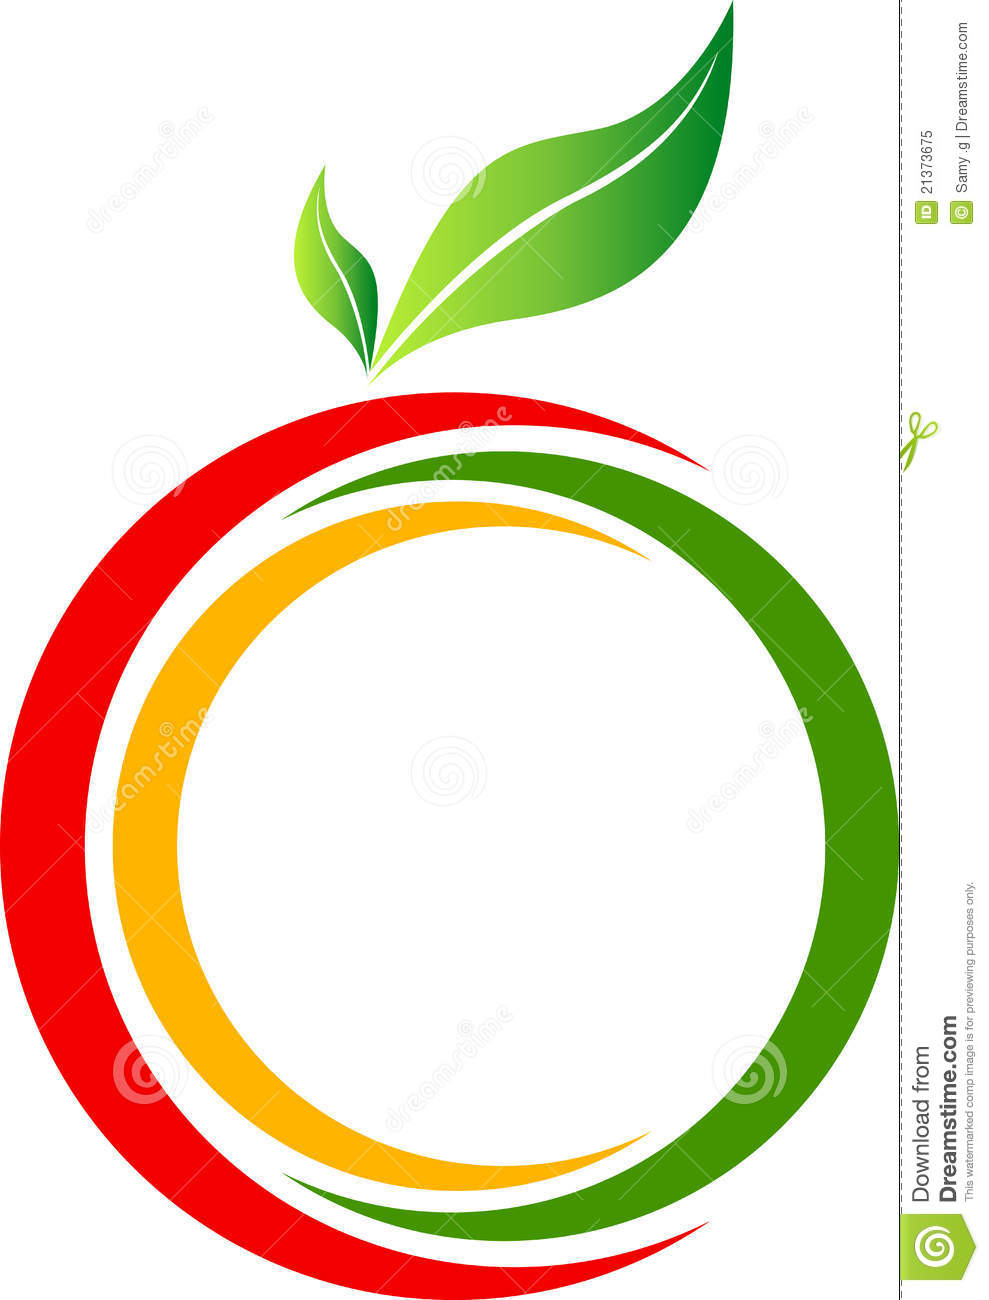 Fruit Logo